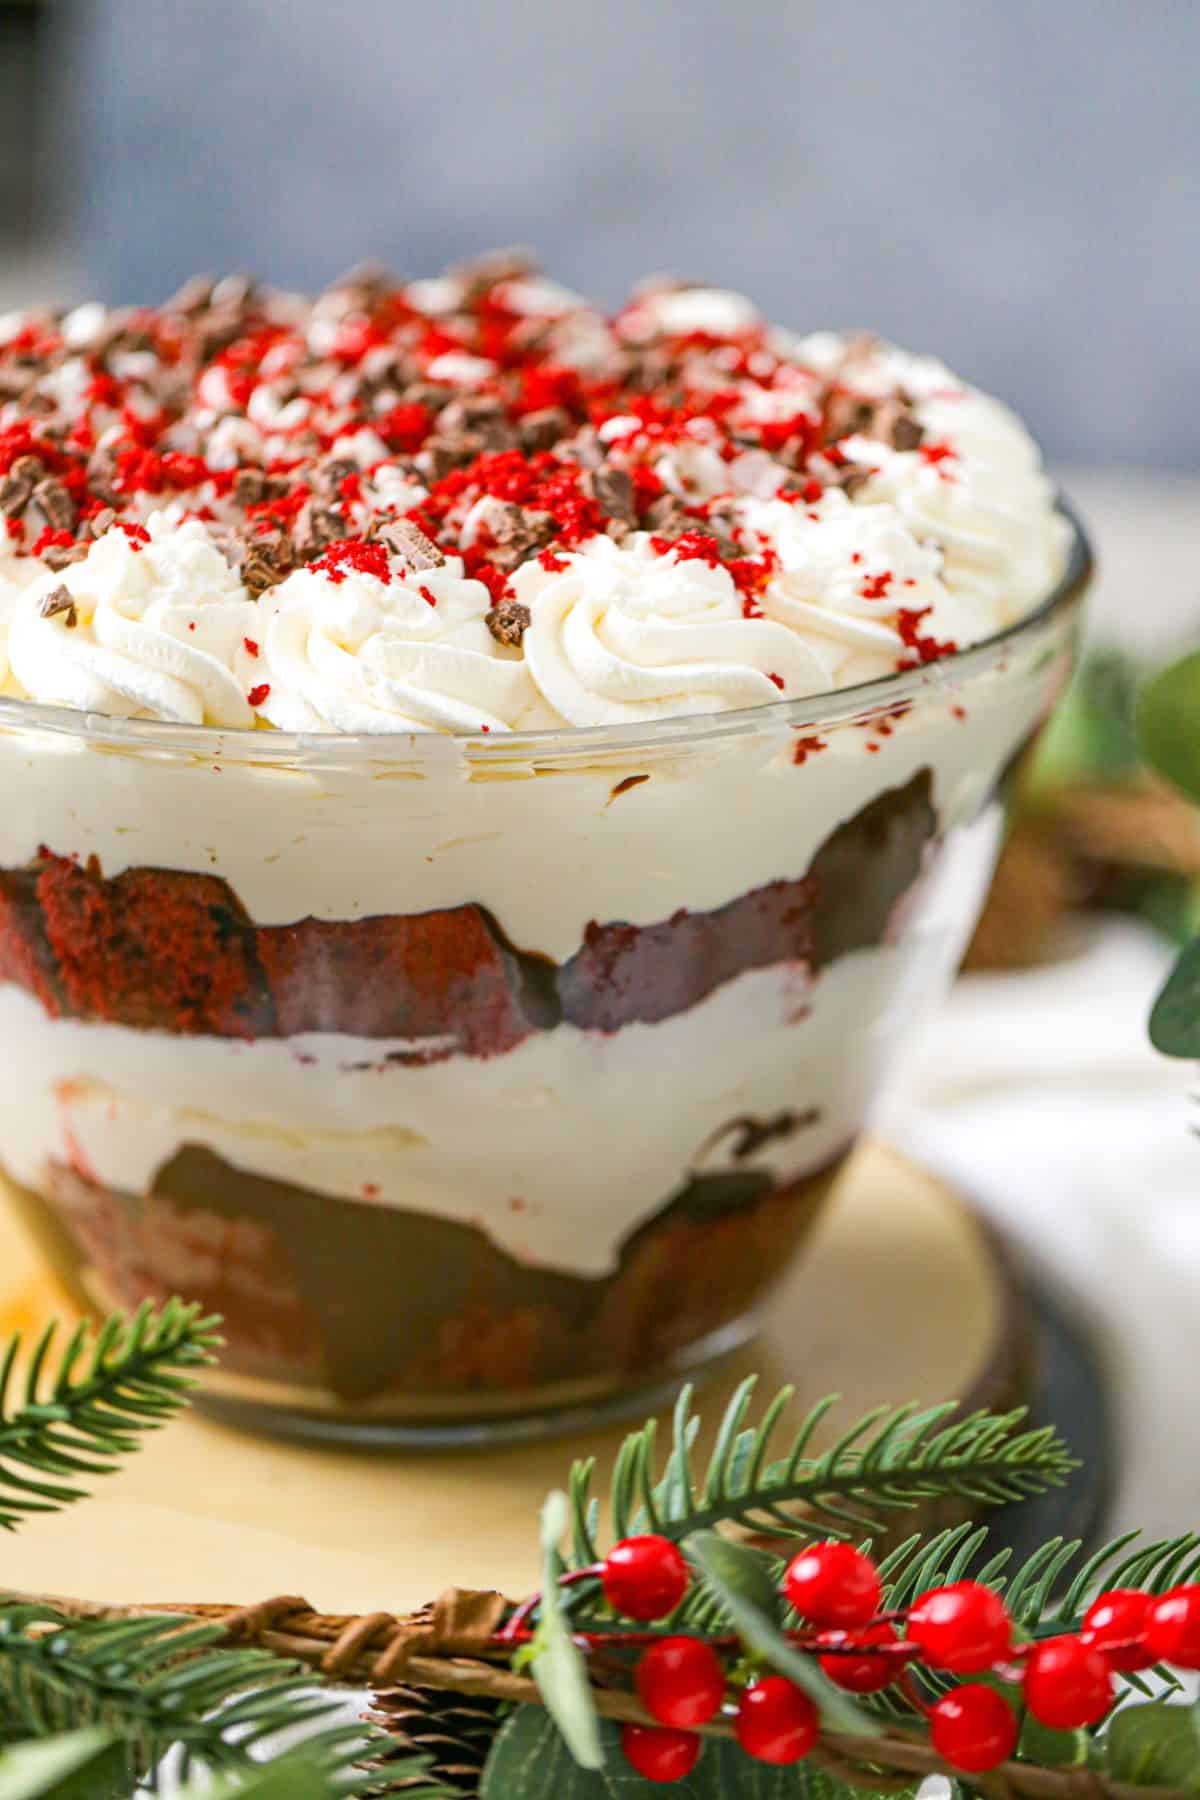 Red Velvet Cake Trifle